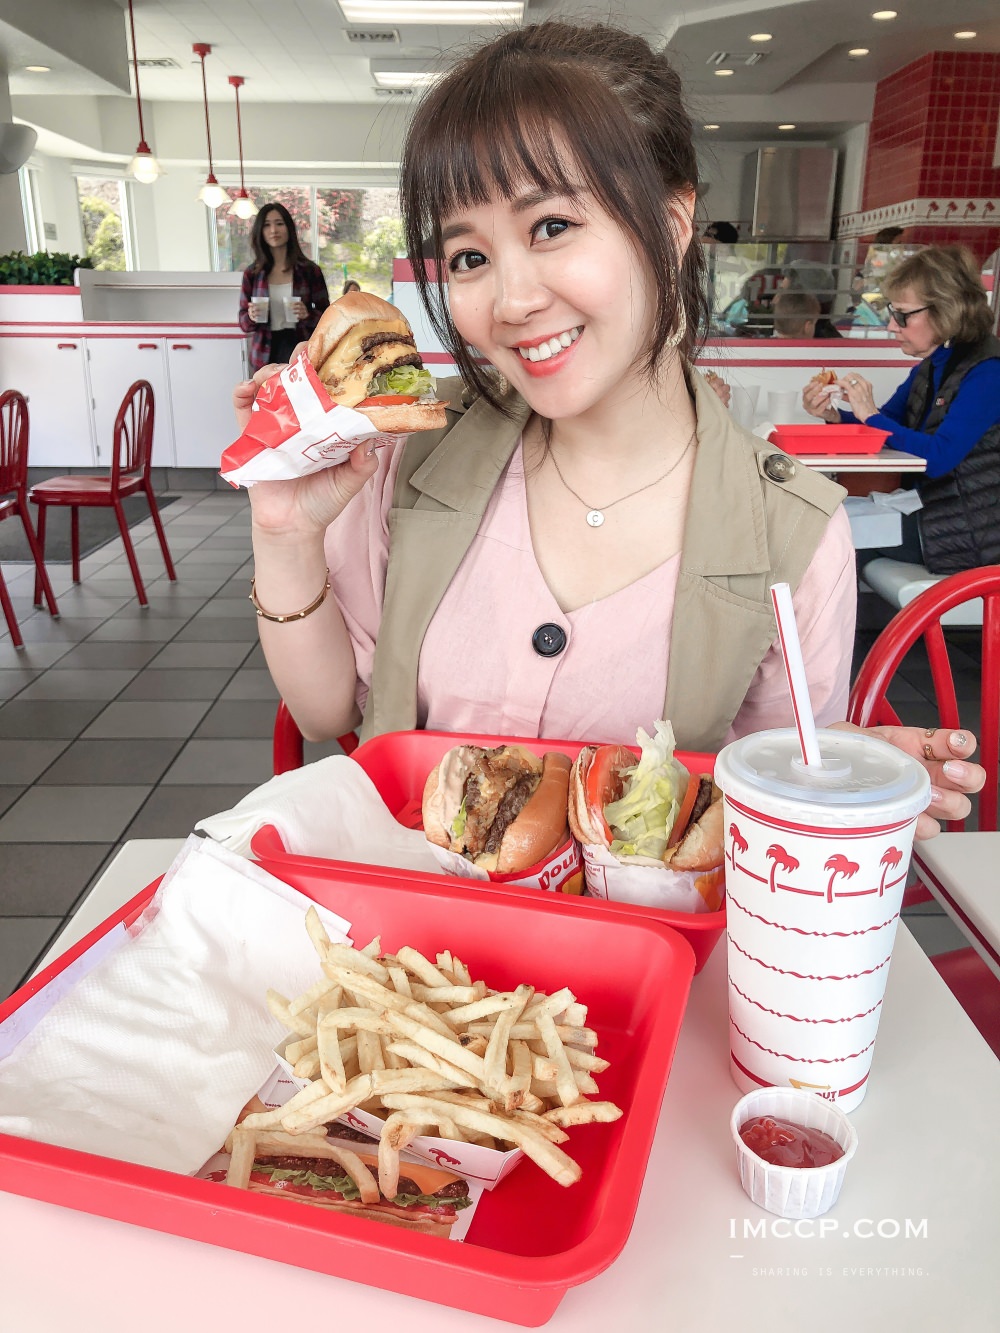 美國漢堡推薦,美式漢堡,InNOut,Shake Shack,地獄廚房漢堡,加州漢堡,洛杉磯美食,聖地牙哥美食,拉斯維加斯美食,廚神漢堡,漢堡必吃